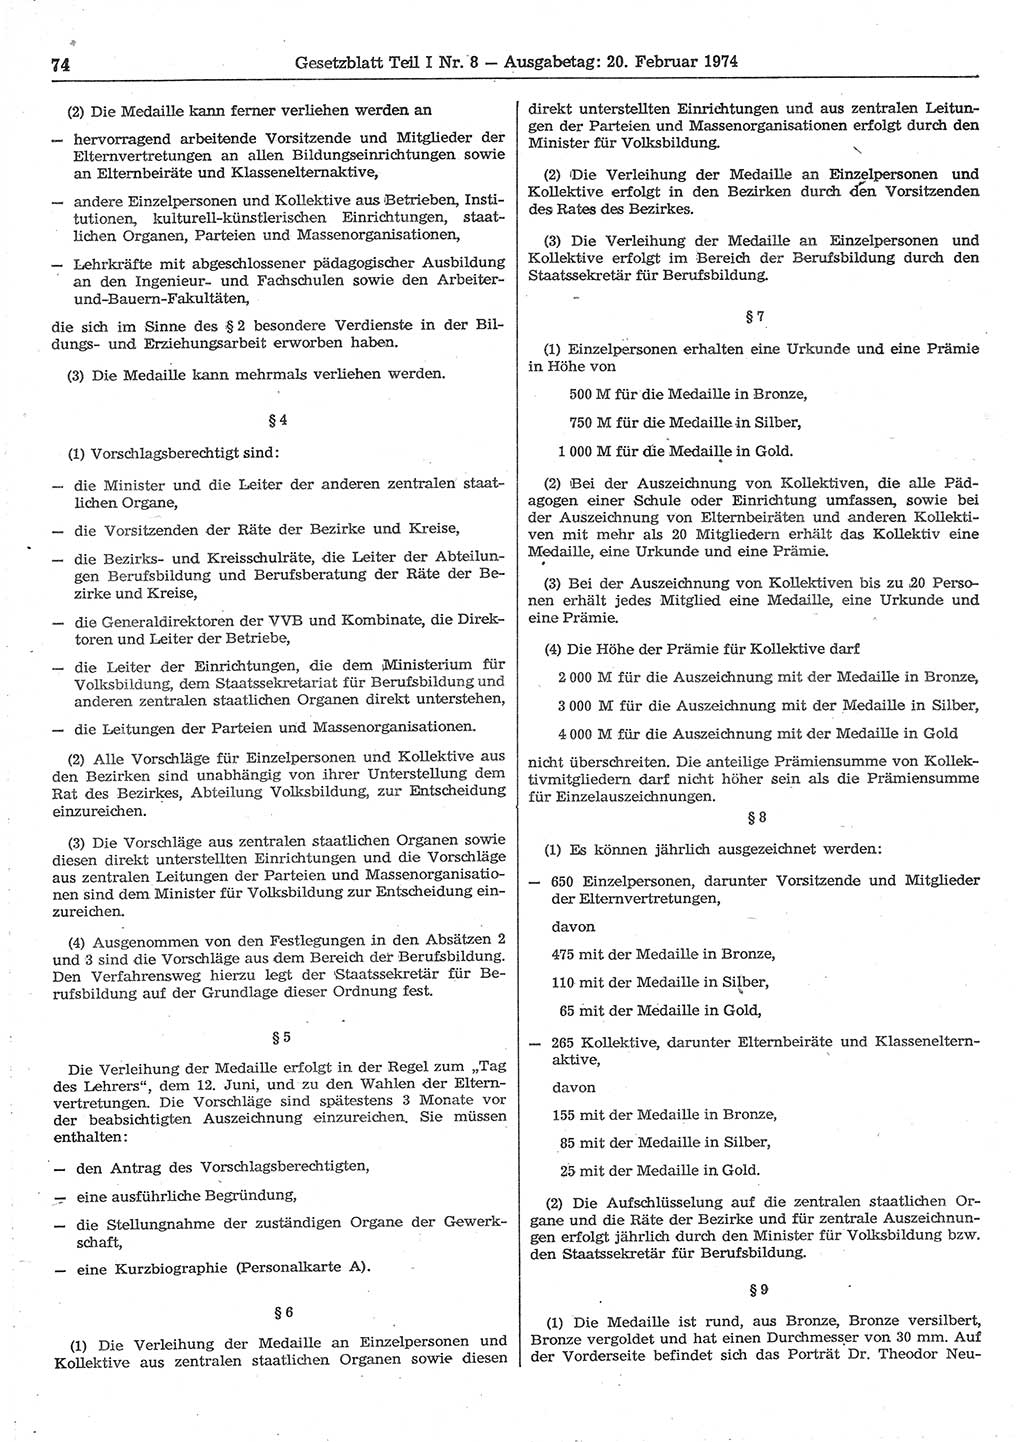 Gesetzblatt (GBl.) der Deutschen Demokratischen Republik (DDR) Teil Ⅰ 1974, Seite 74 (GBl. DDR Ⅰ 1974, S. 74)